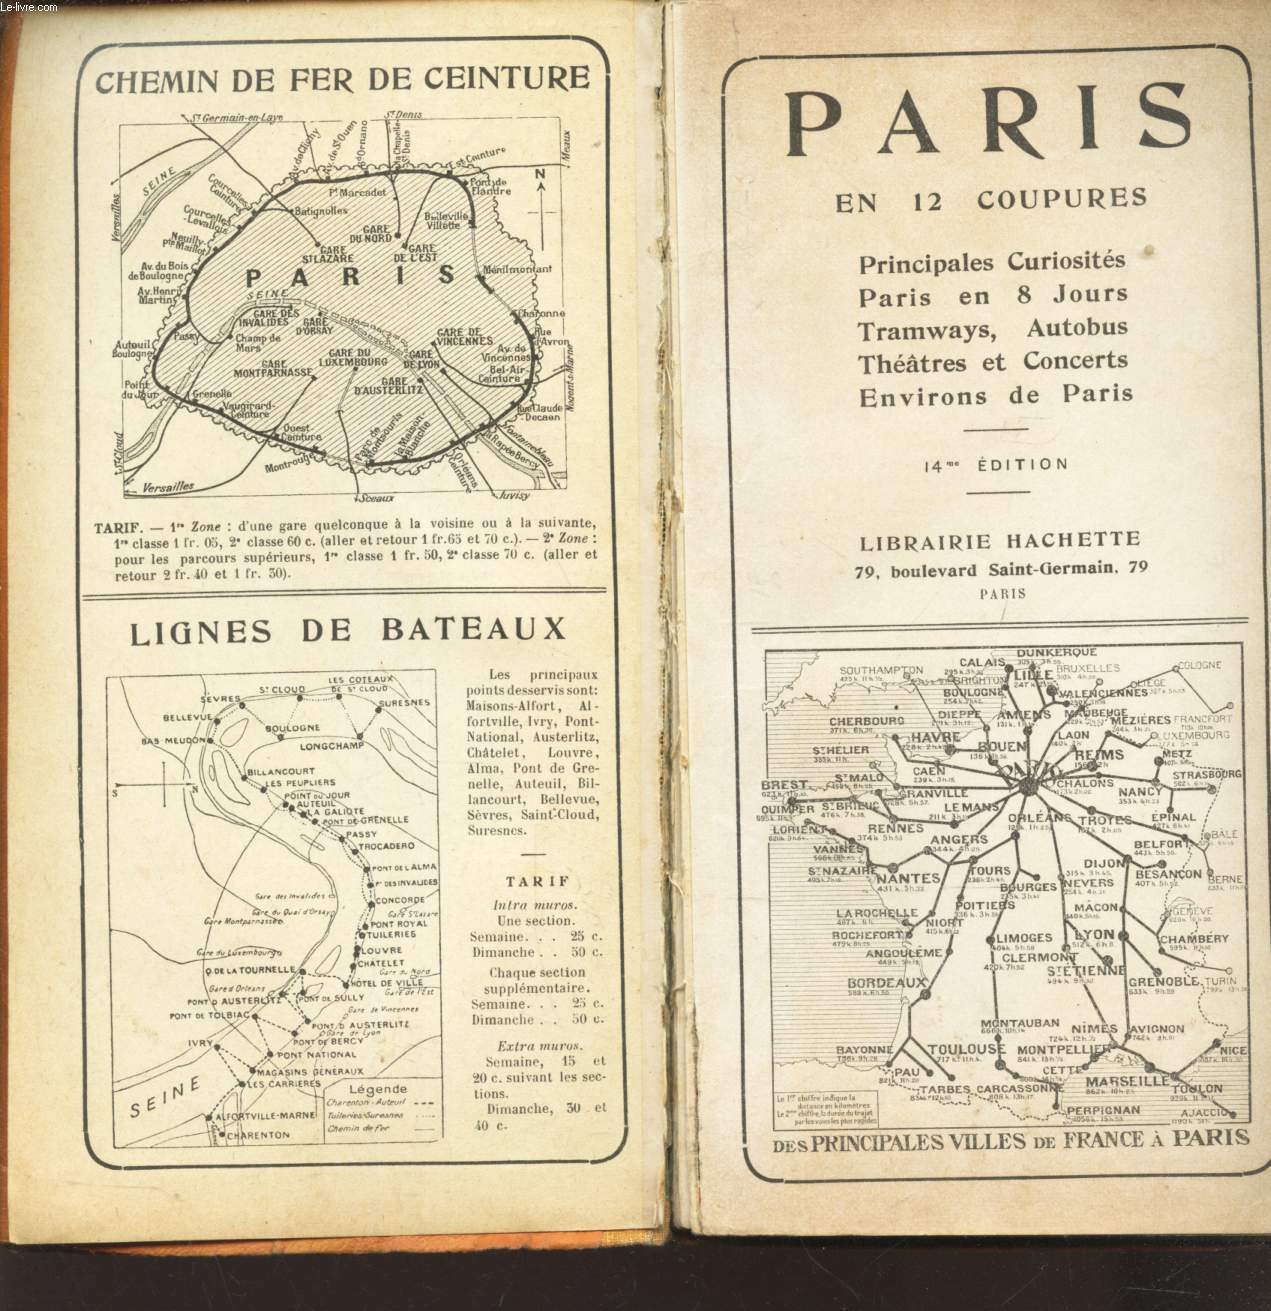 PARIS EN 12 COUPURES - Principales curiosites - Paris en 8 jours - Tramways, autobus - Thatres et concerts - Environs de Paris / 14e EDITION